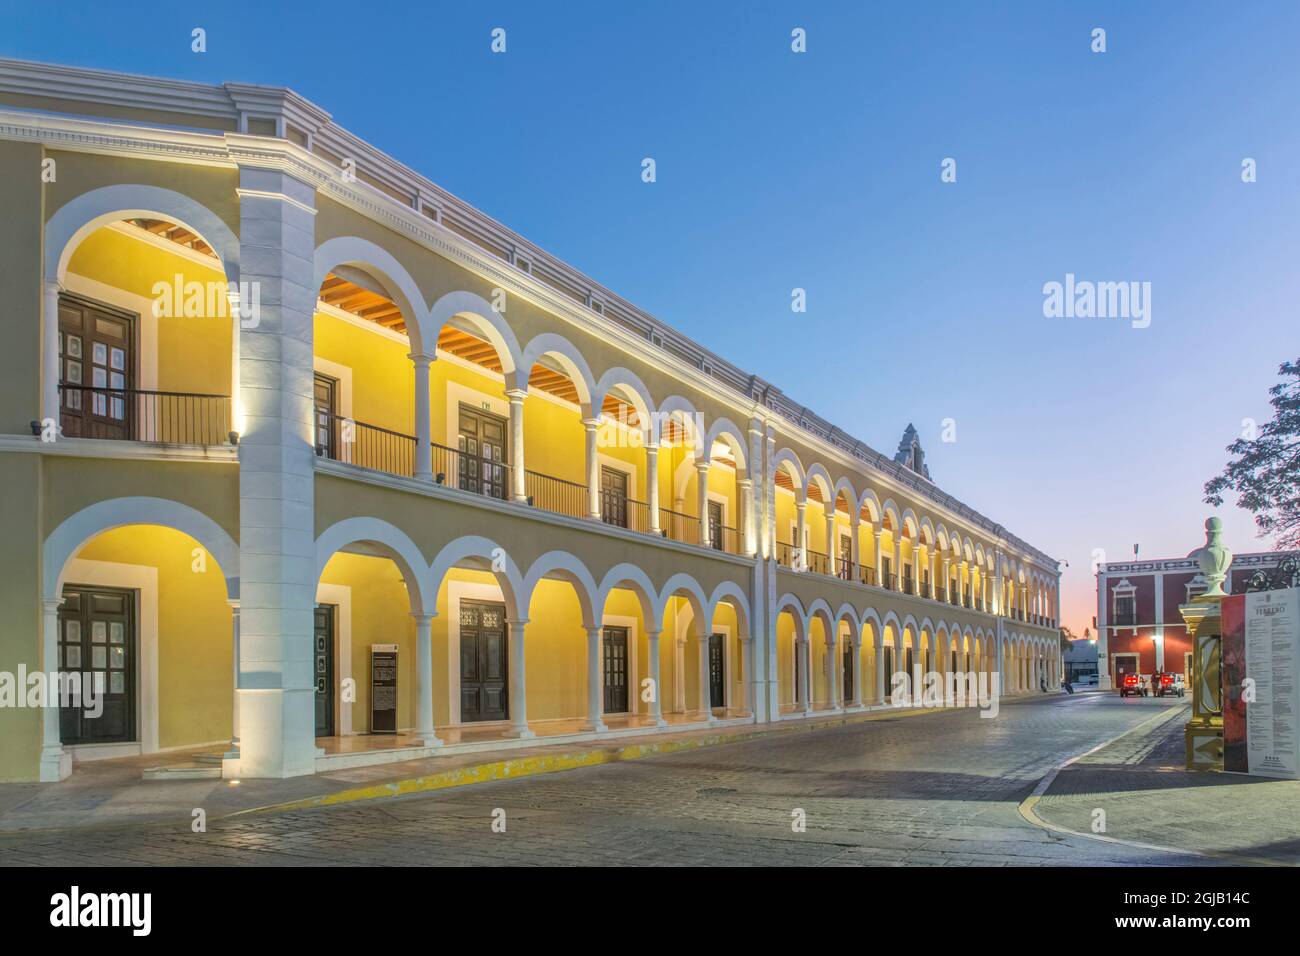 Mexico, Campeche. Plaza de la Independencia, central square of Campeche city at Dawn Stock Photo